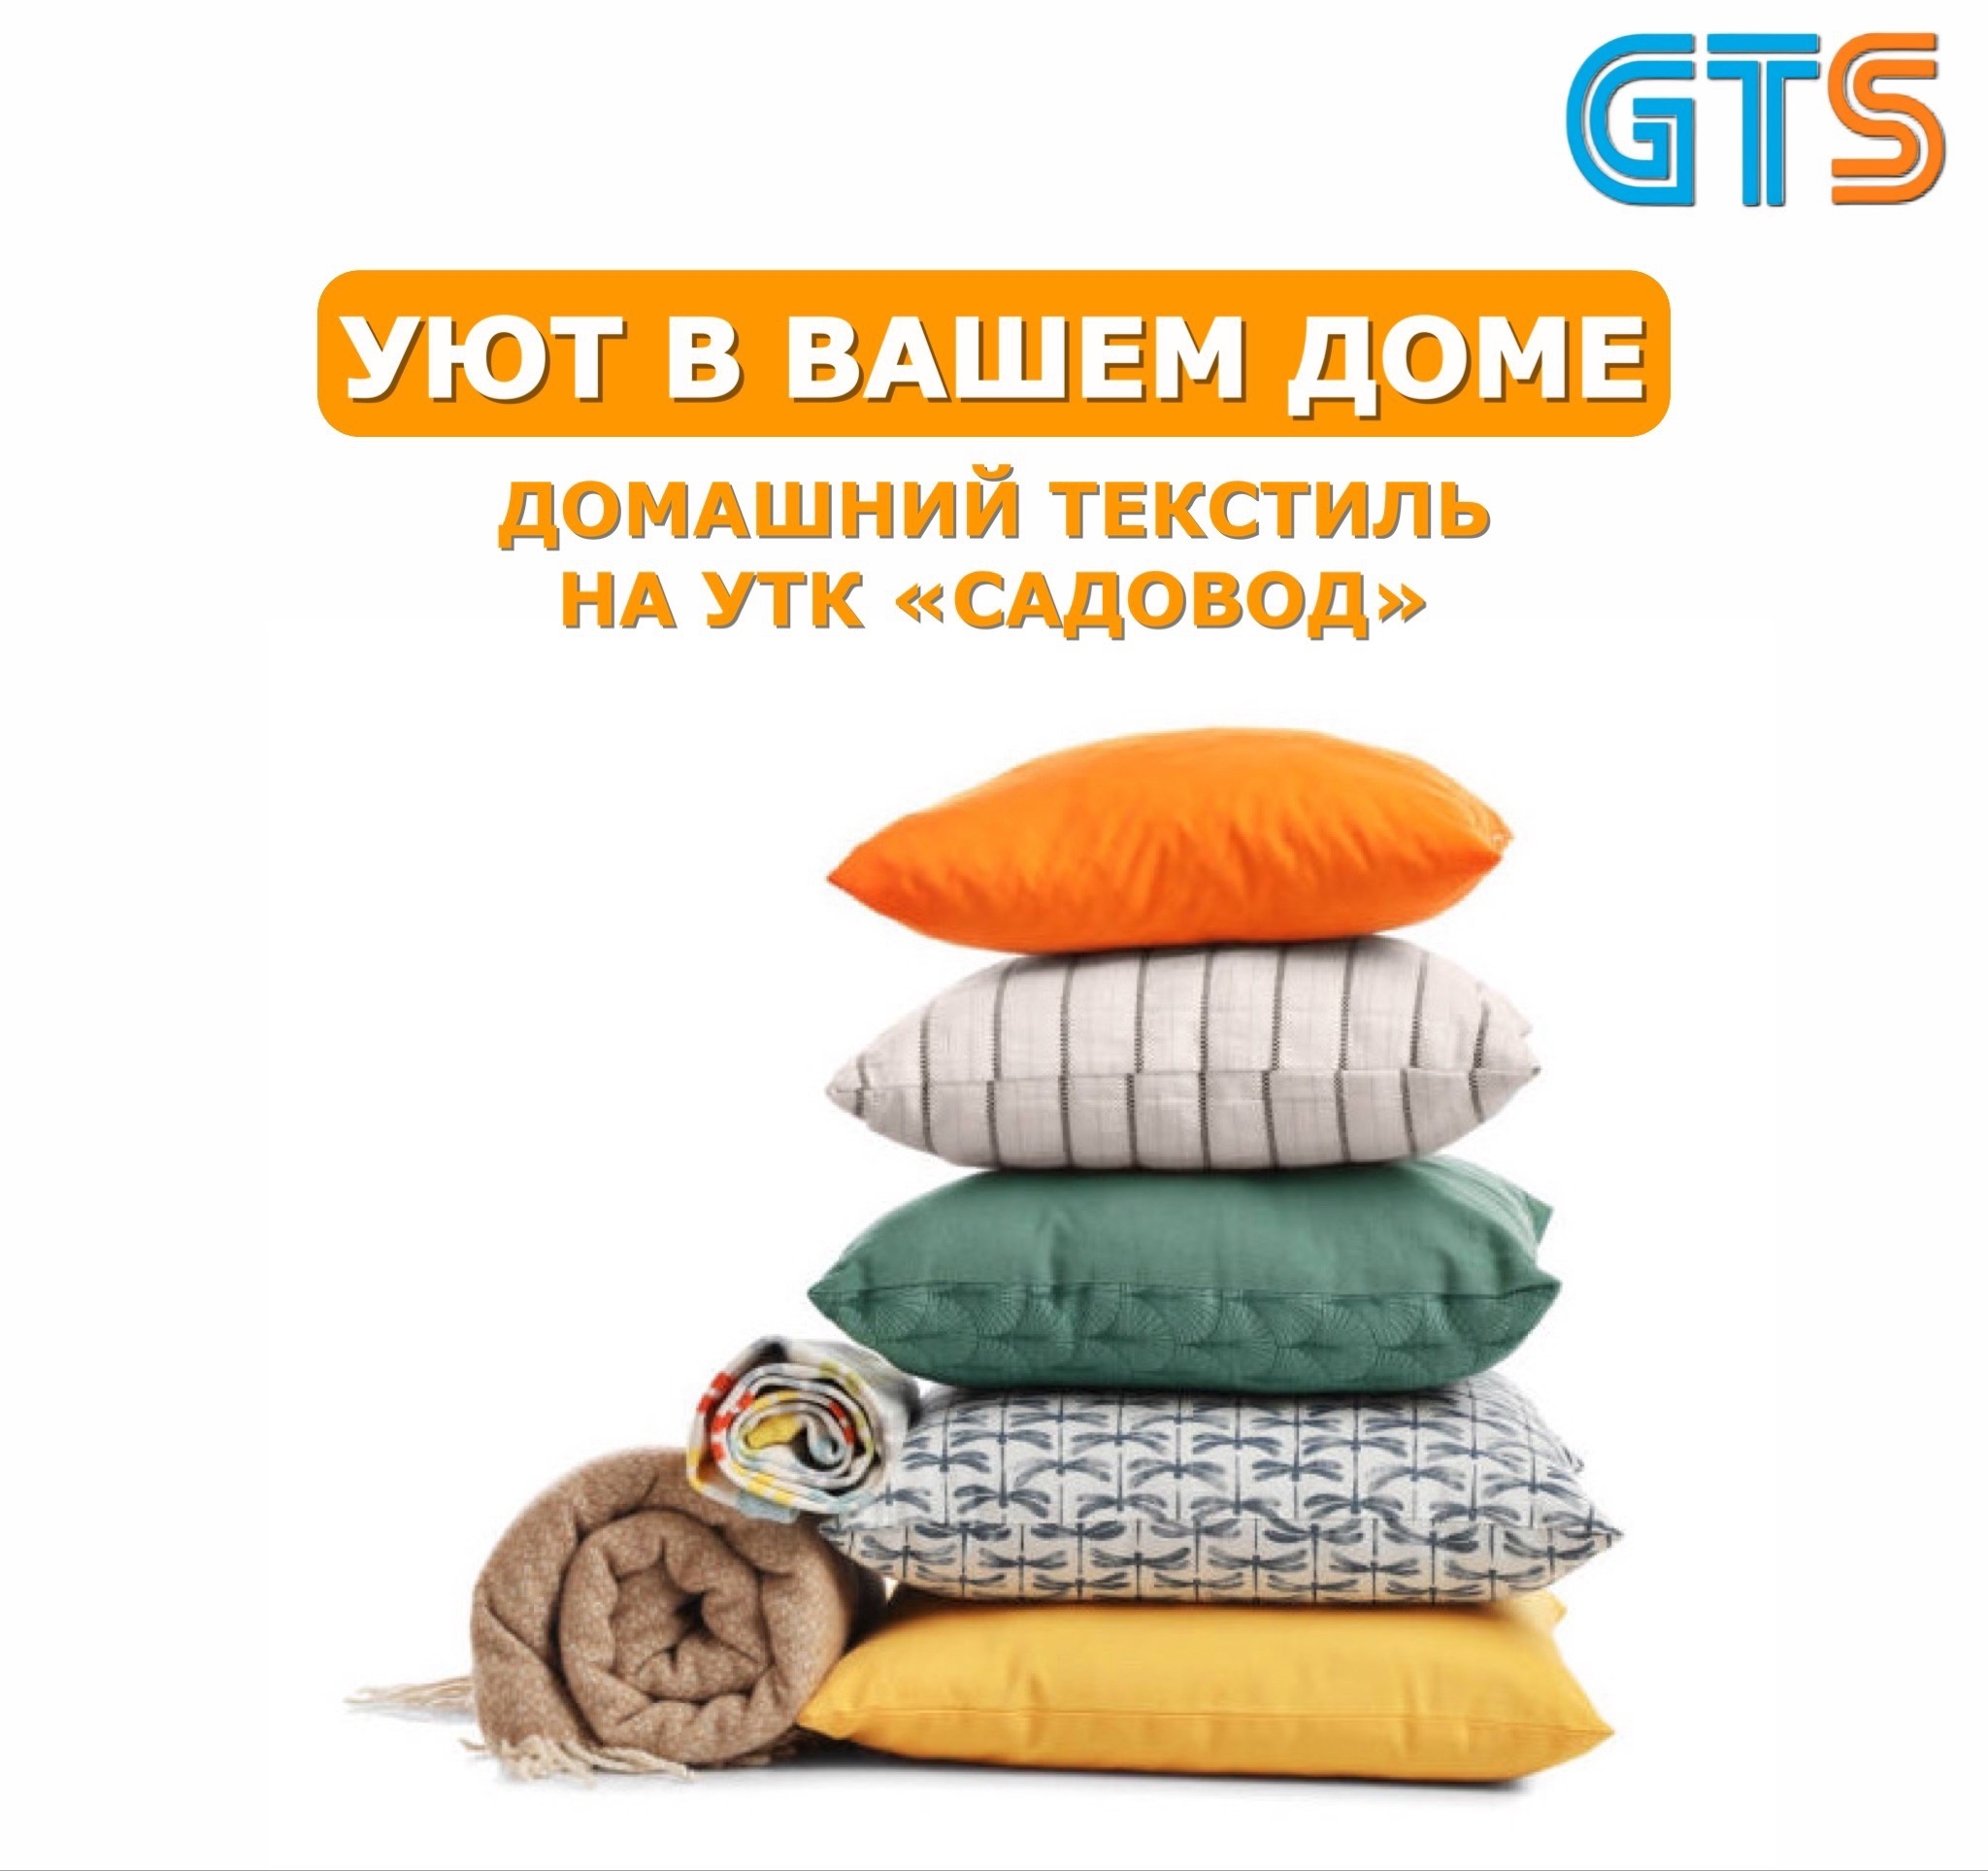 Сделать дом уютнее просто вместе с УТК «Садовод» и Компанией «GTS»! https://clubposrednikov.ru/gts/ Правильно подобранный, качественный домашний текстиль играет большую роль в жизни человека. УТК «Садовод» предлагает вниманию широкий выбор товаров этой ка